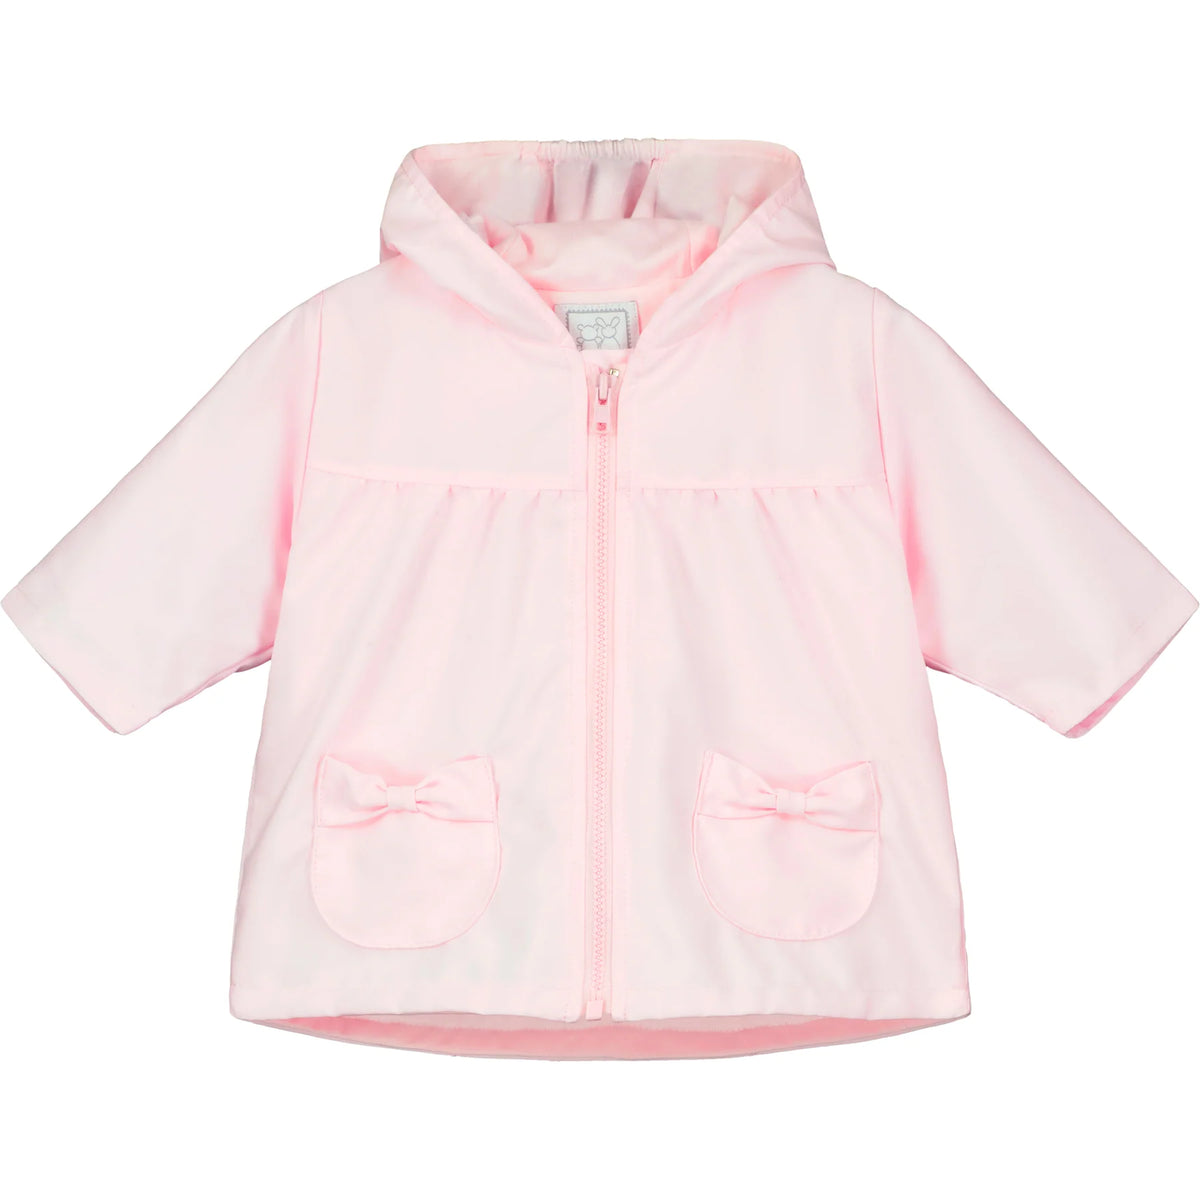 Emile et Rose Baby Pink Jacket